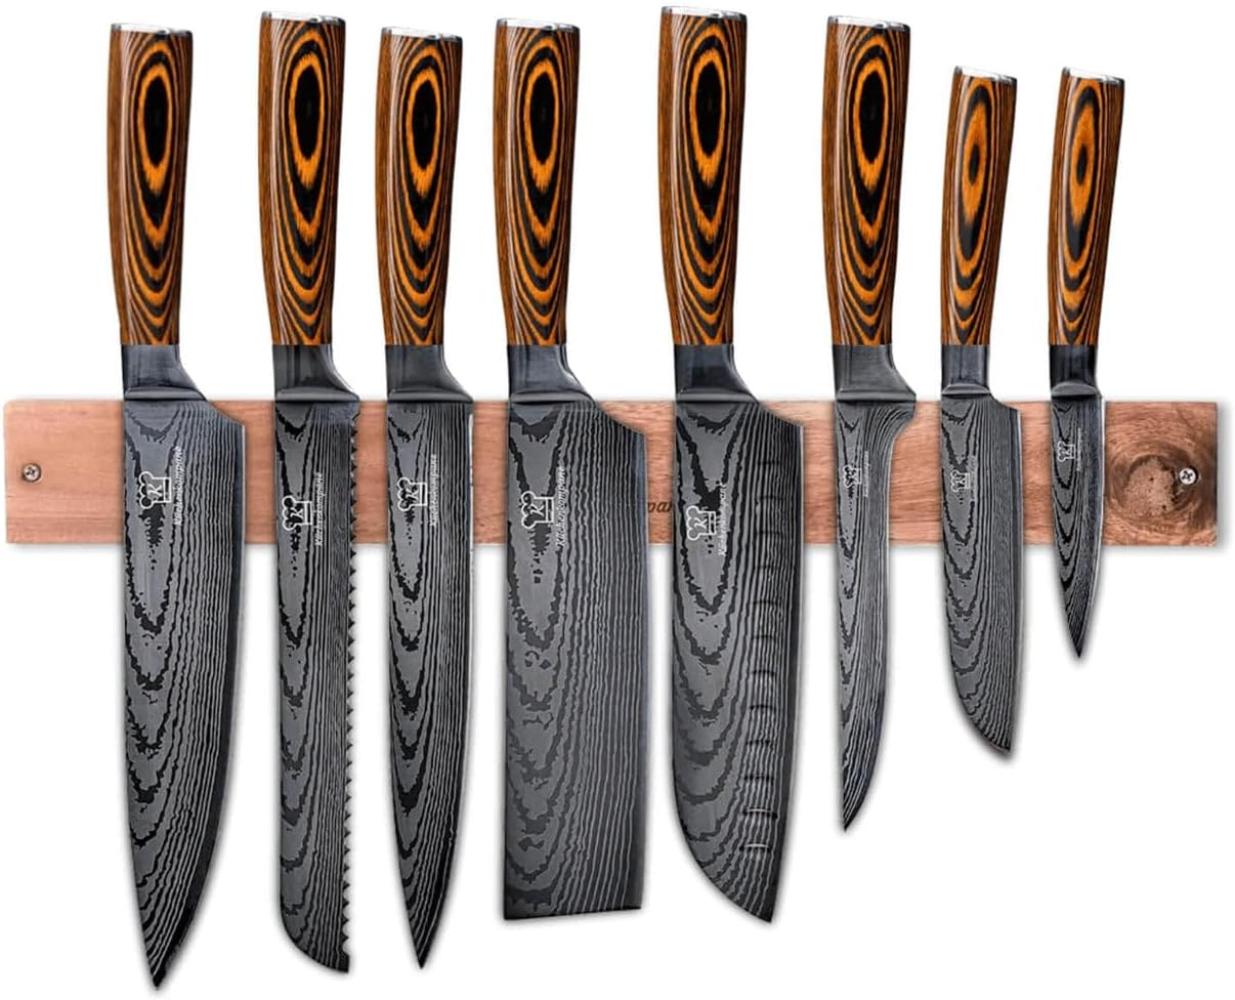 Messerset asiatisch mit magnetischer Holzleiste - Akarui Küchenmesser - 8-teiliges Messerset mit handgeschmiedeten Edelstahlklingen und Pakkaholz Griff - Rostfrei & scharf Bild 1